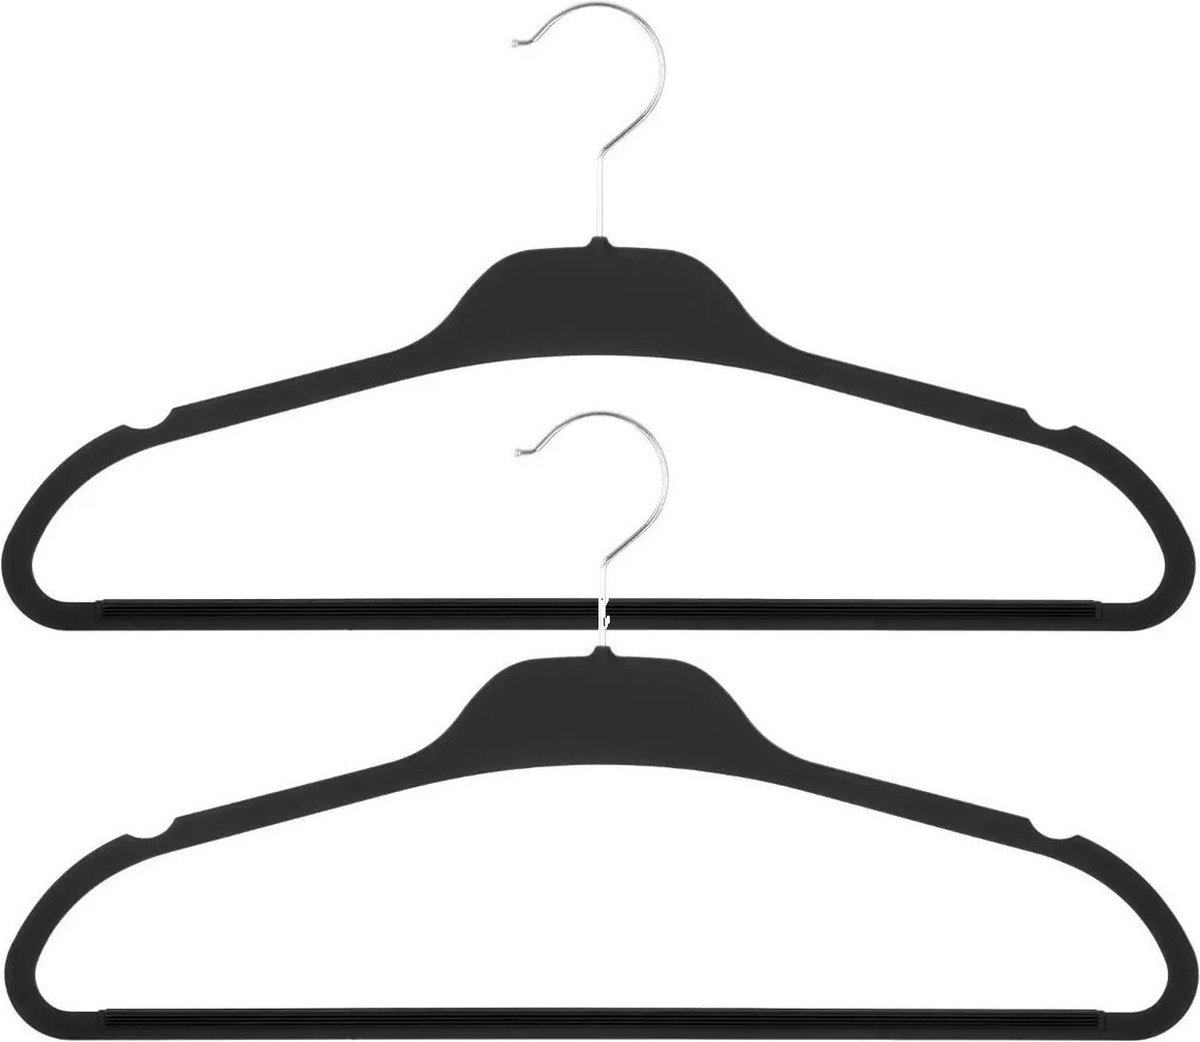 Set van 15x stuks kunststof/rubber kledinghangers zwart 45 x 24 cm - Kledingkast hangers/kleerhangers